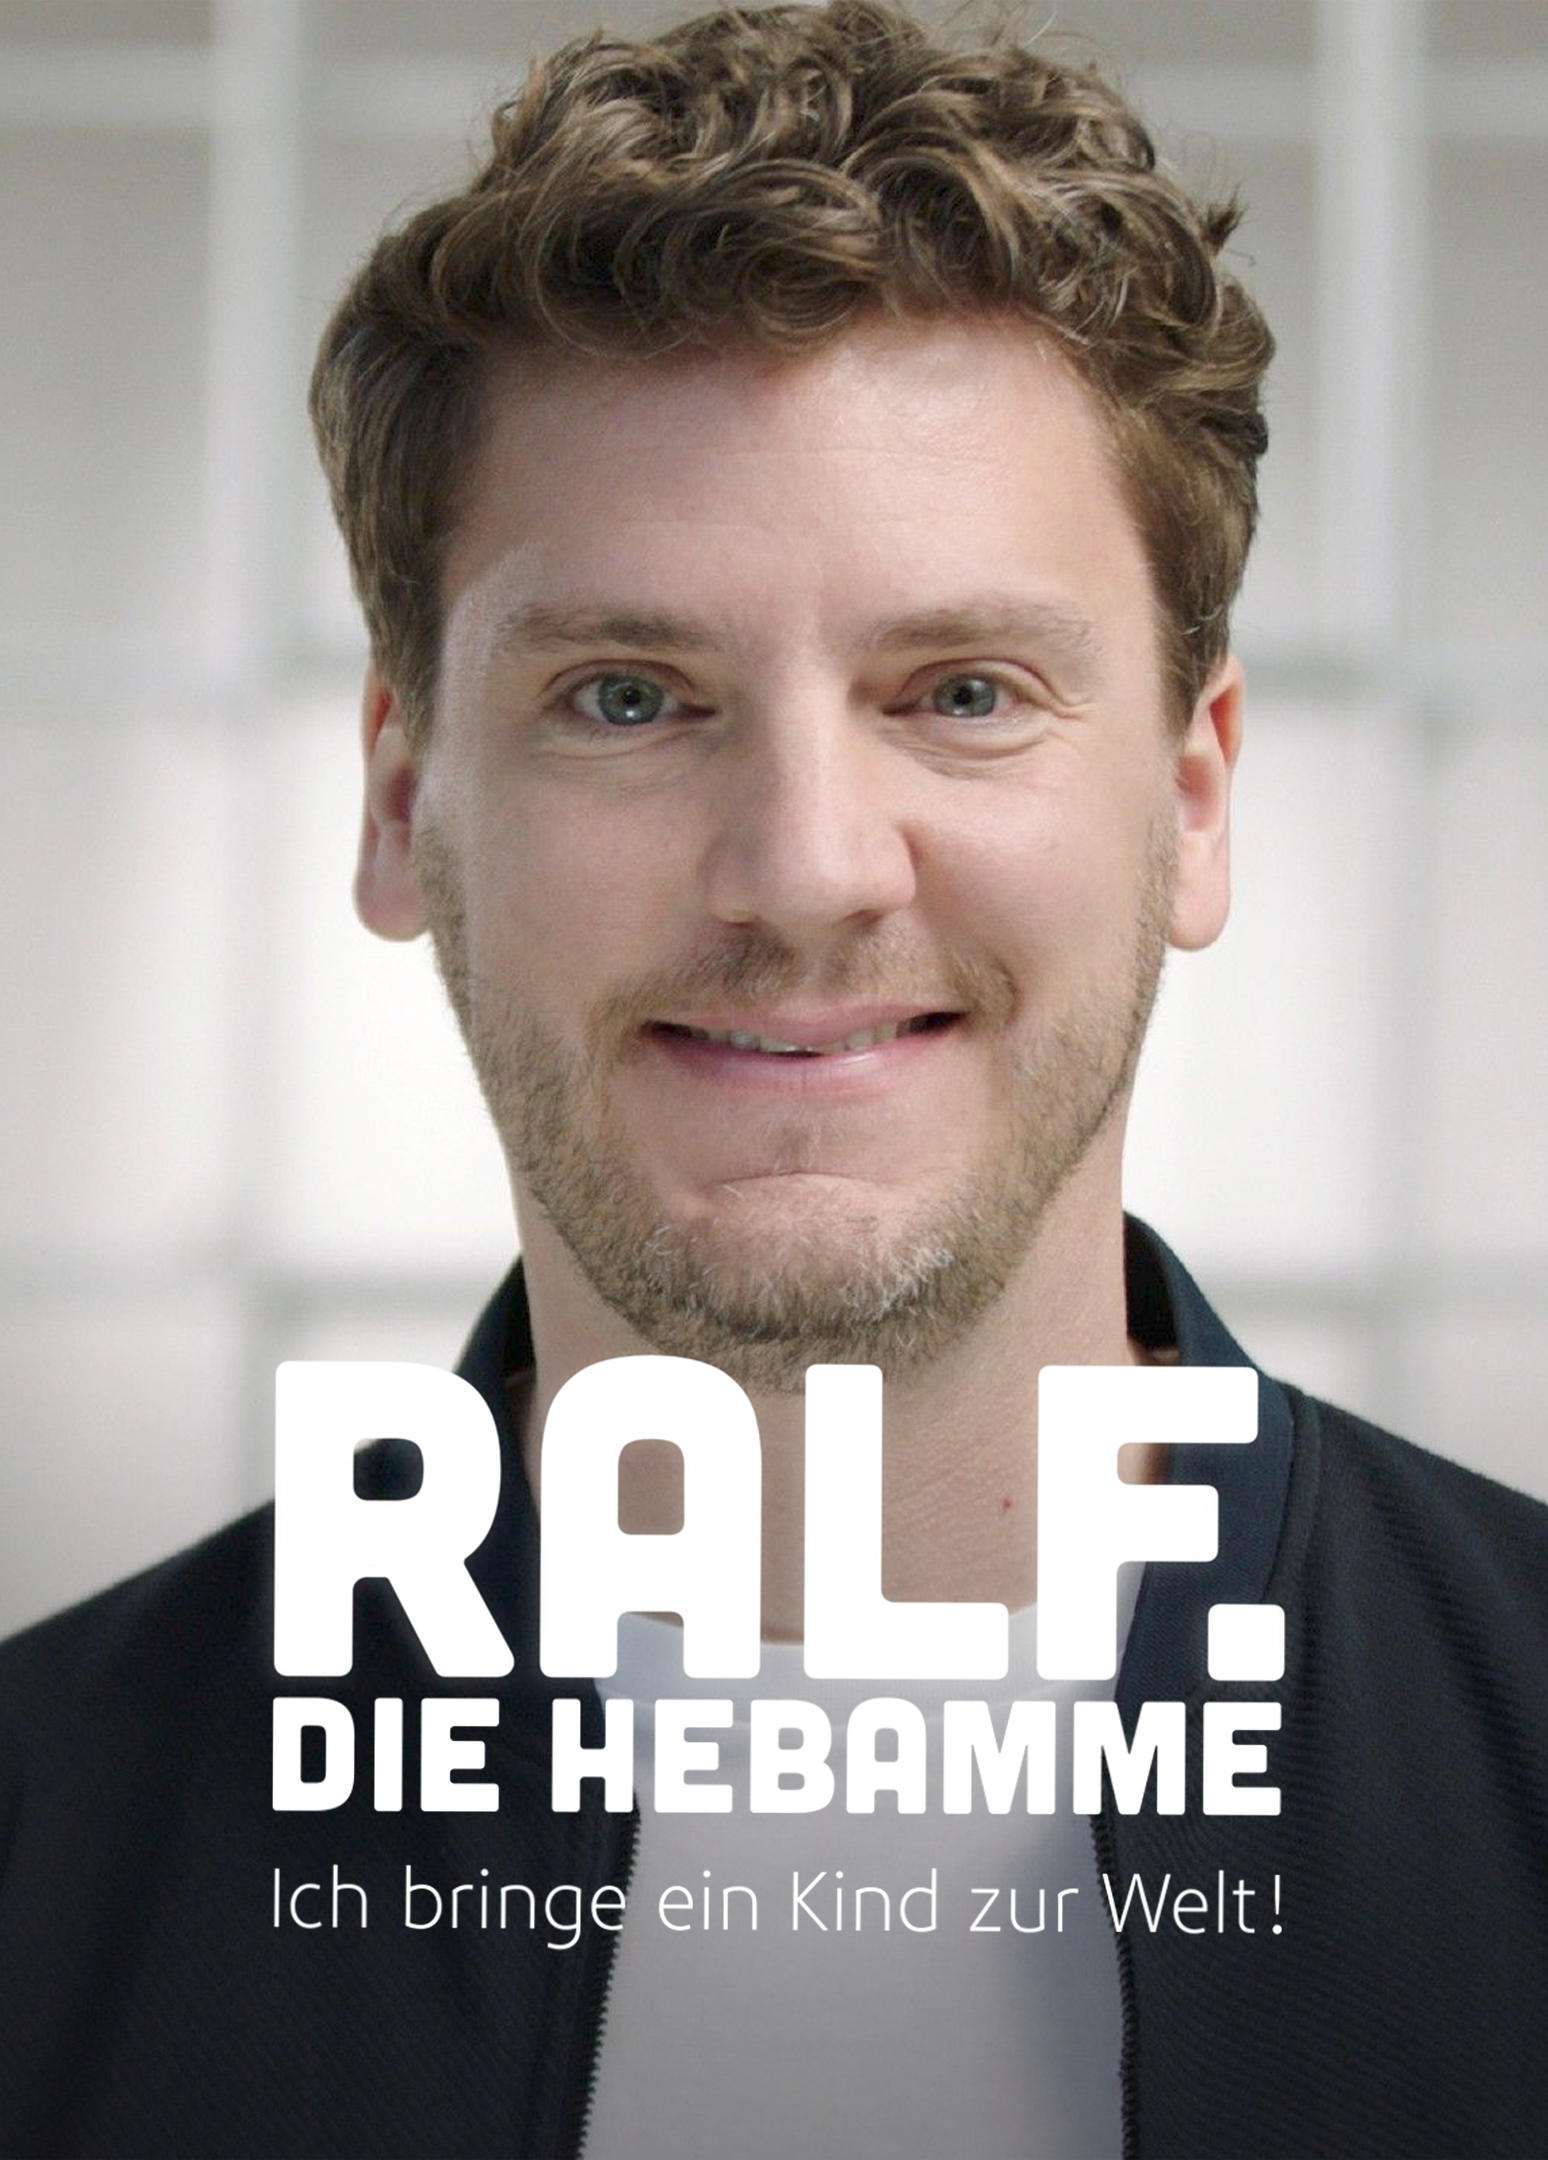 Ralf, die Hebamme - Ich bringe ein Kind zur Welt!